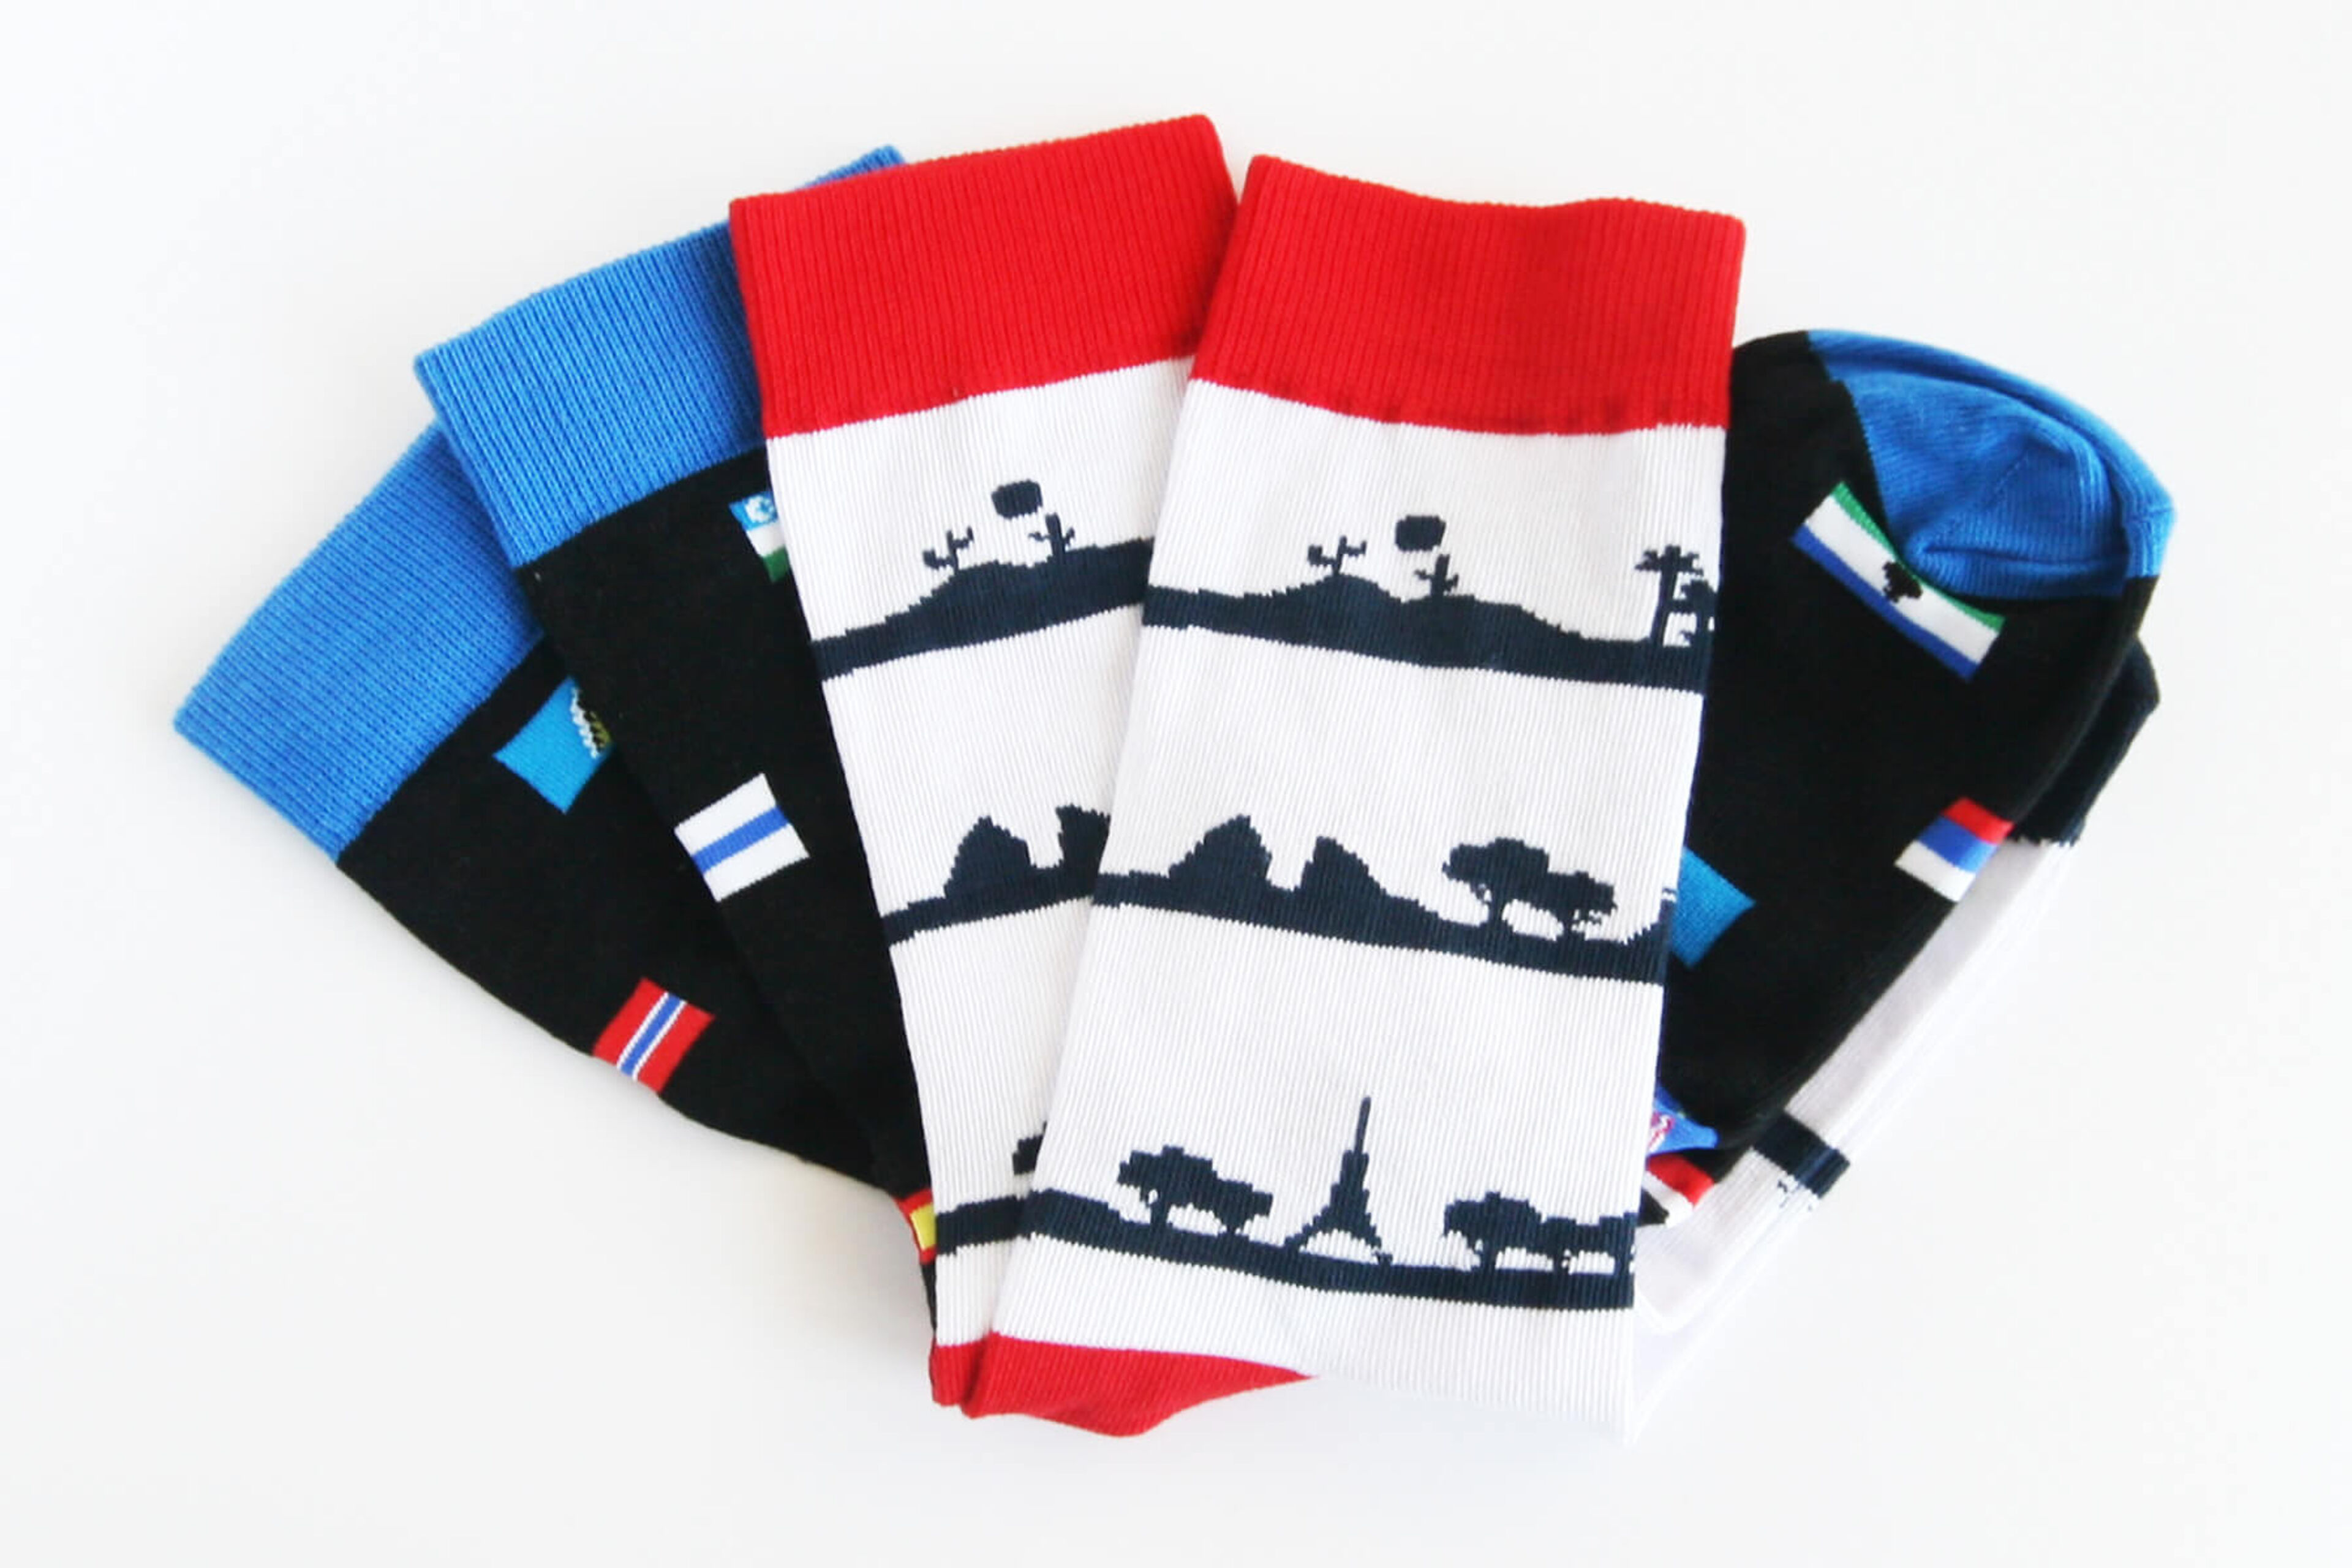 Cestovatelské ponožky v různých vzorech